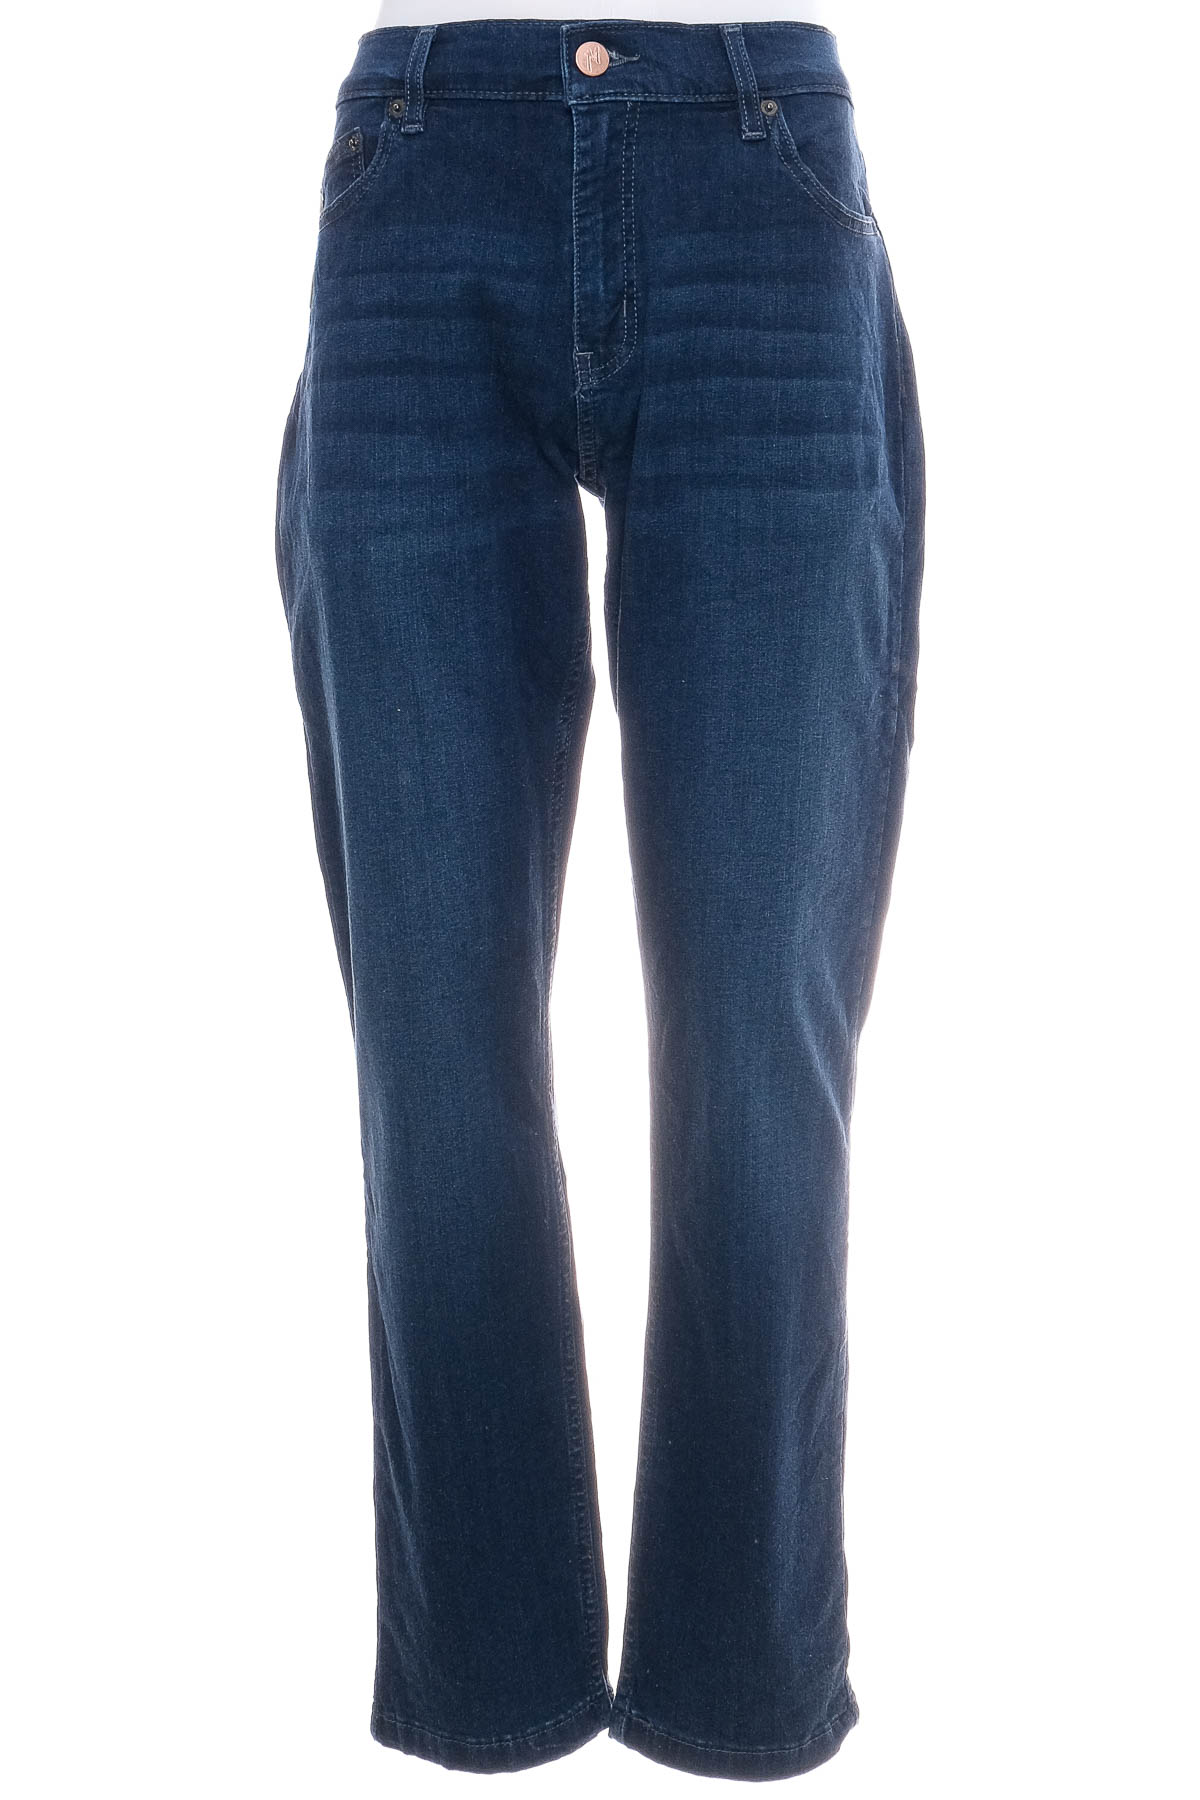 Ανδρικά τζιν - Mugsy Jeans - 0